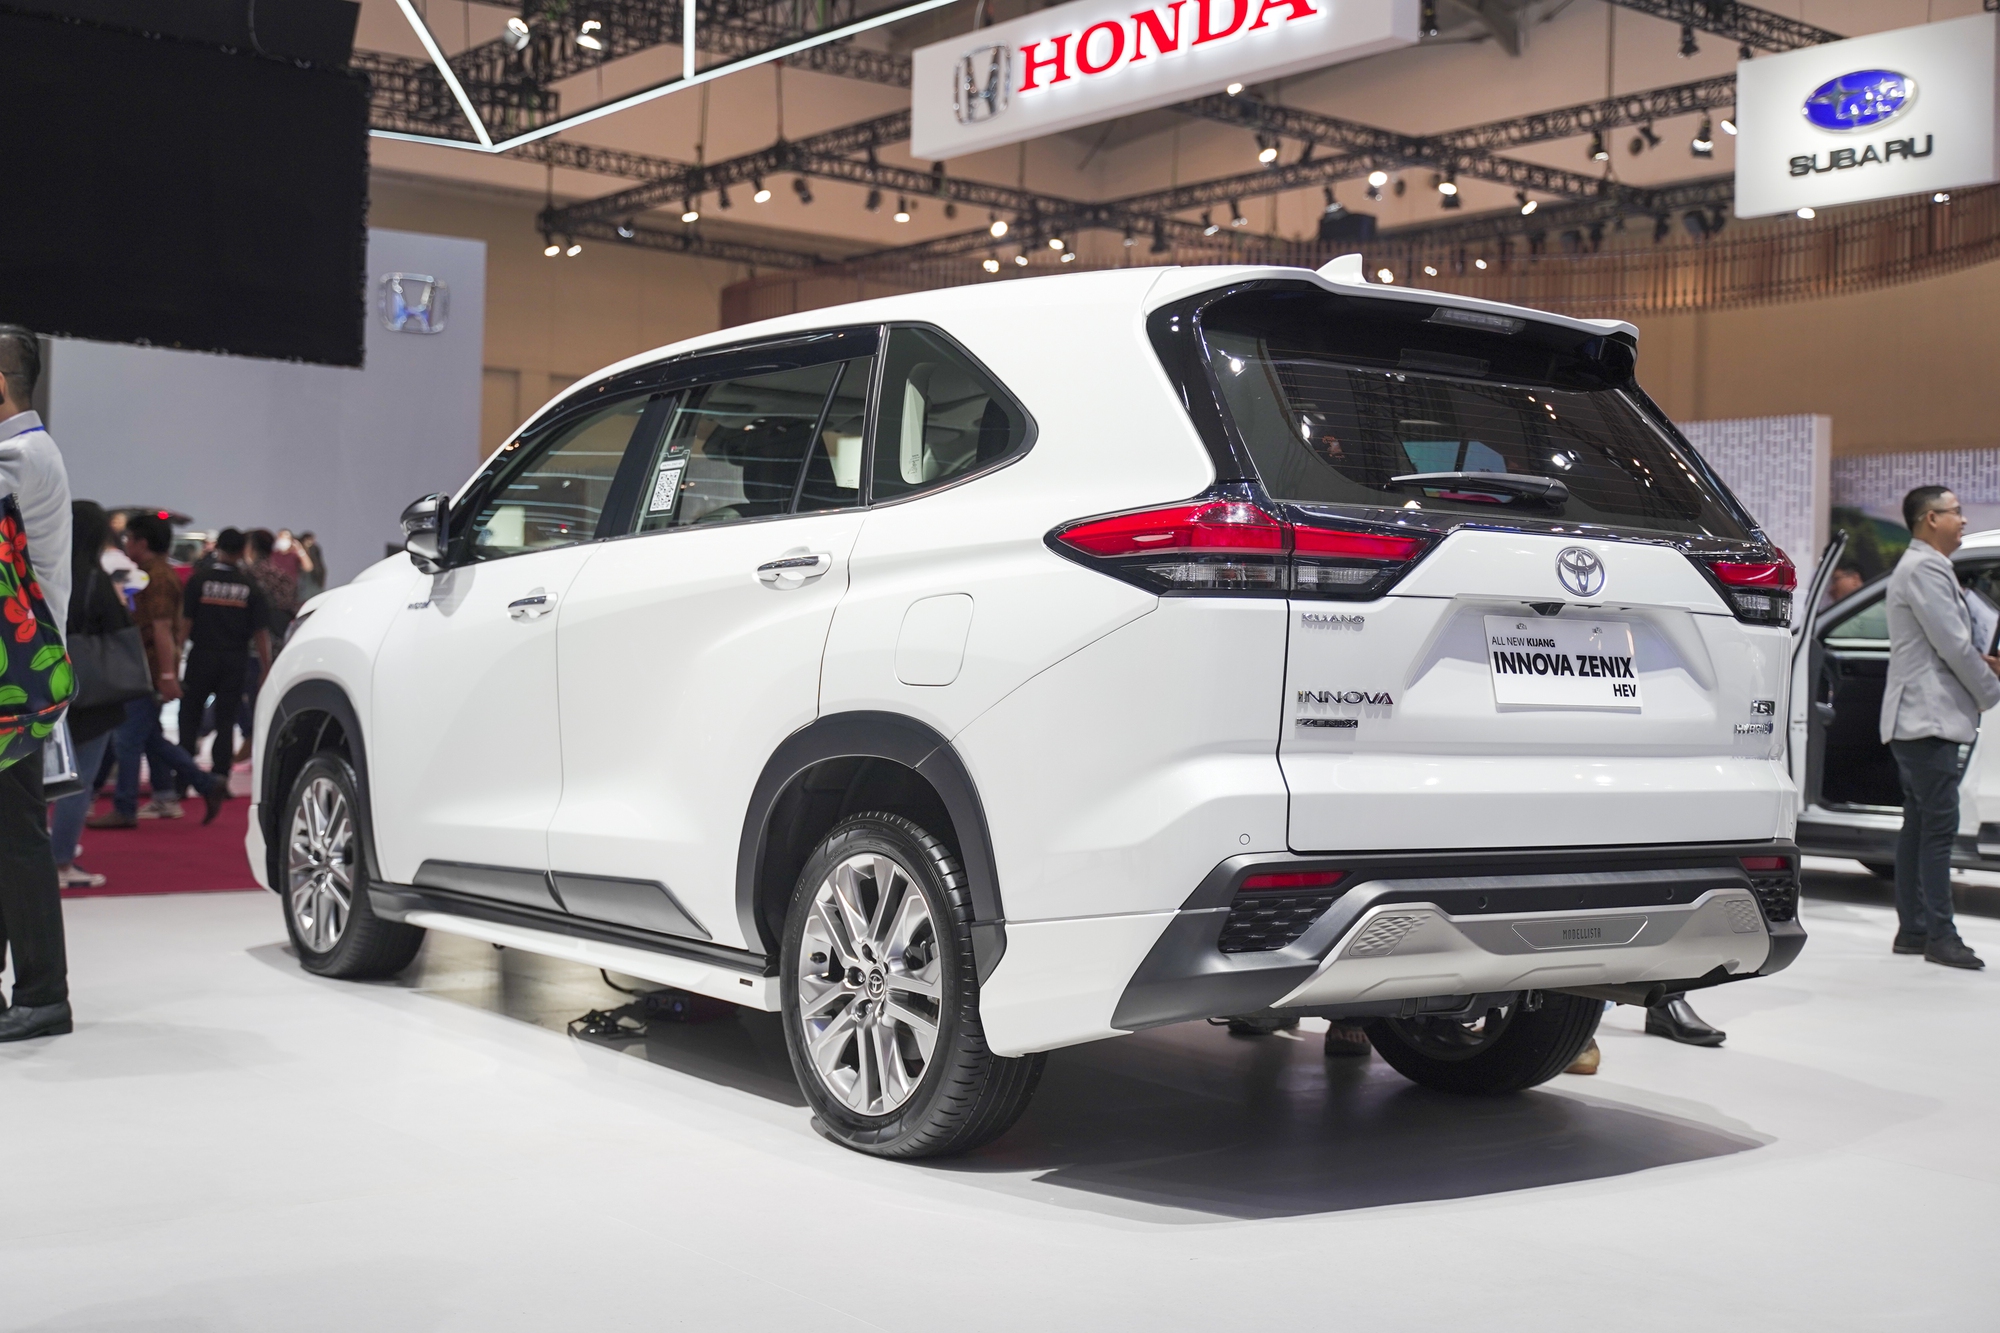 Xem trước Toyota Innova hybrid sắp về Việt Nam: Giá không dưới 1 tỷ đồng, vượt trội về công nghệ so với bản cũ - Ảnh 4.